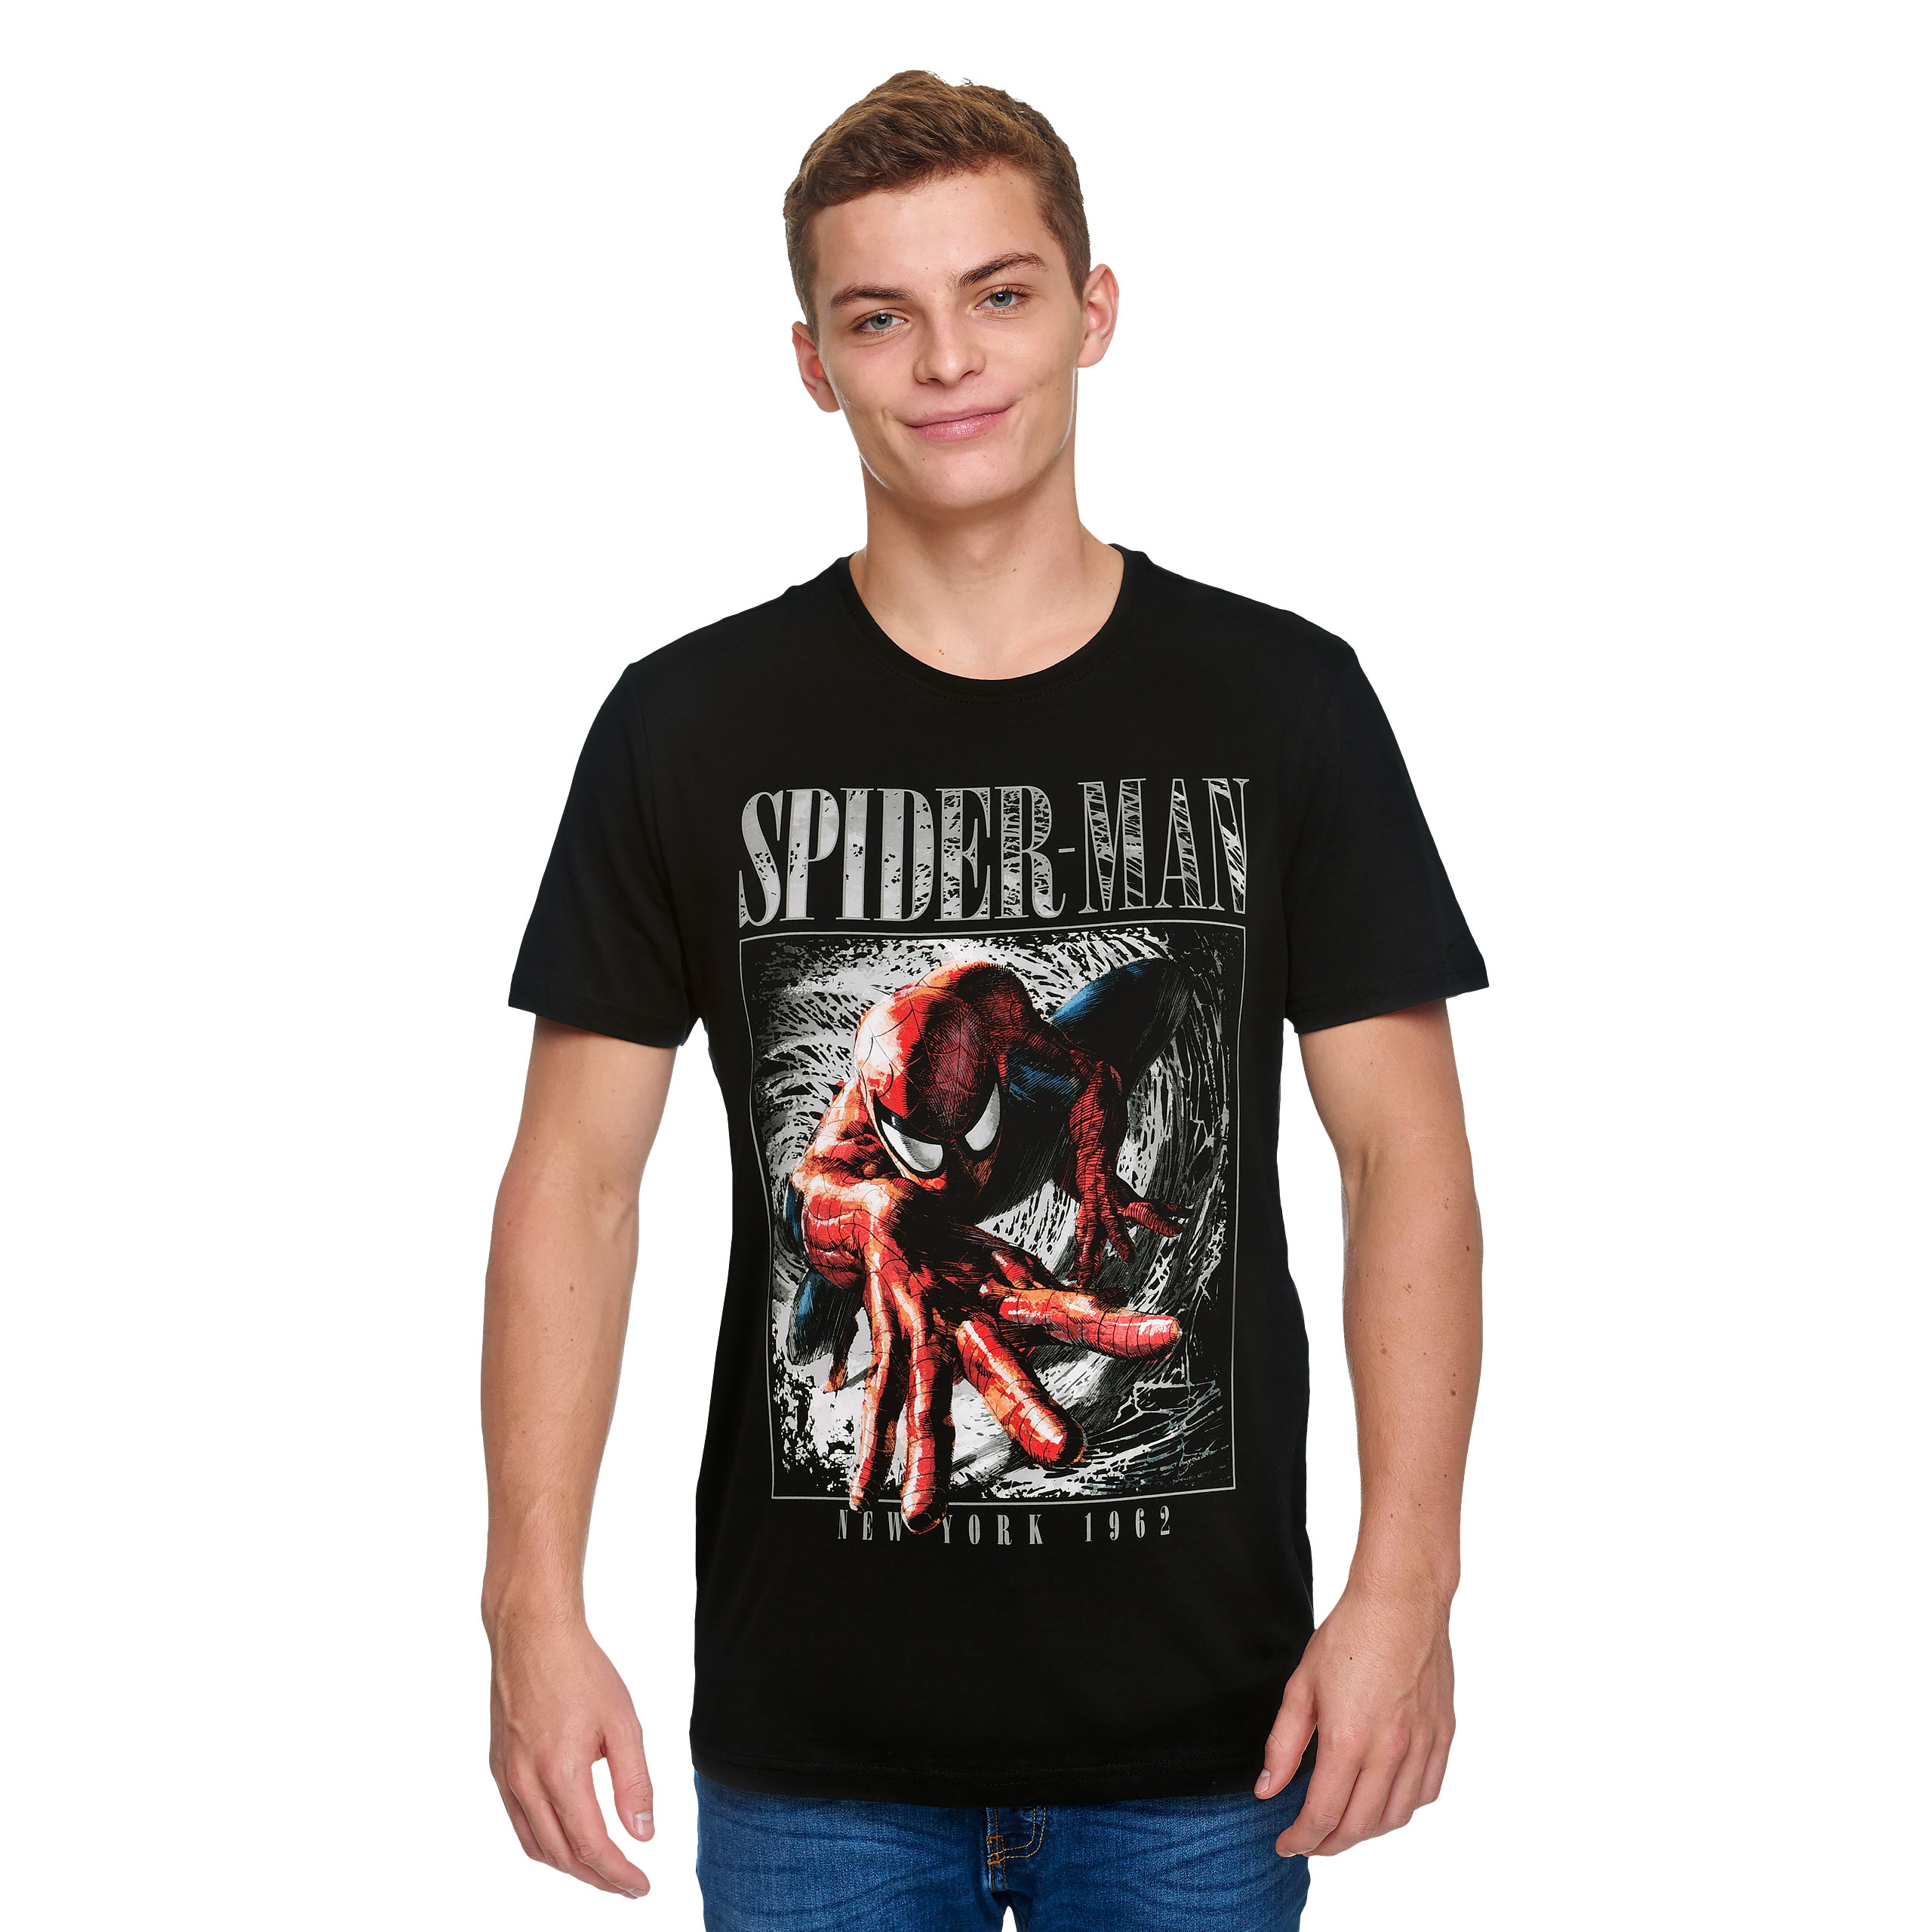 Spider-Man - New York 1962 T-Shirt schwarz